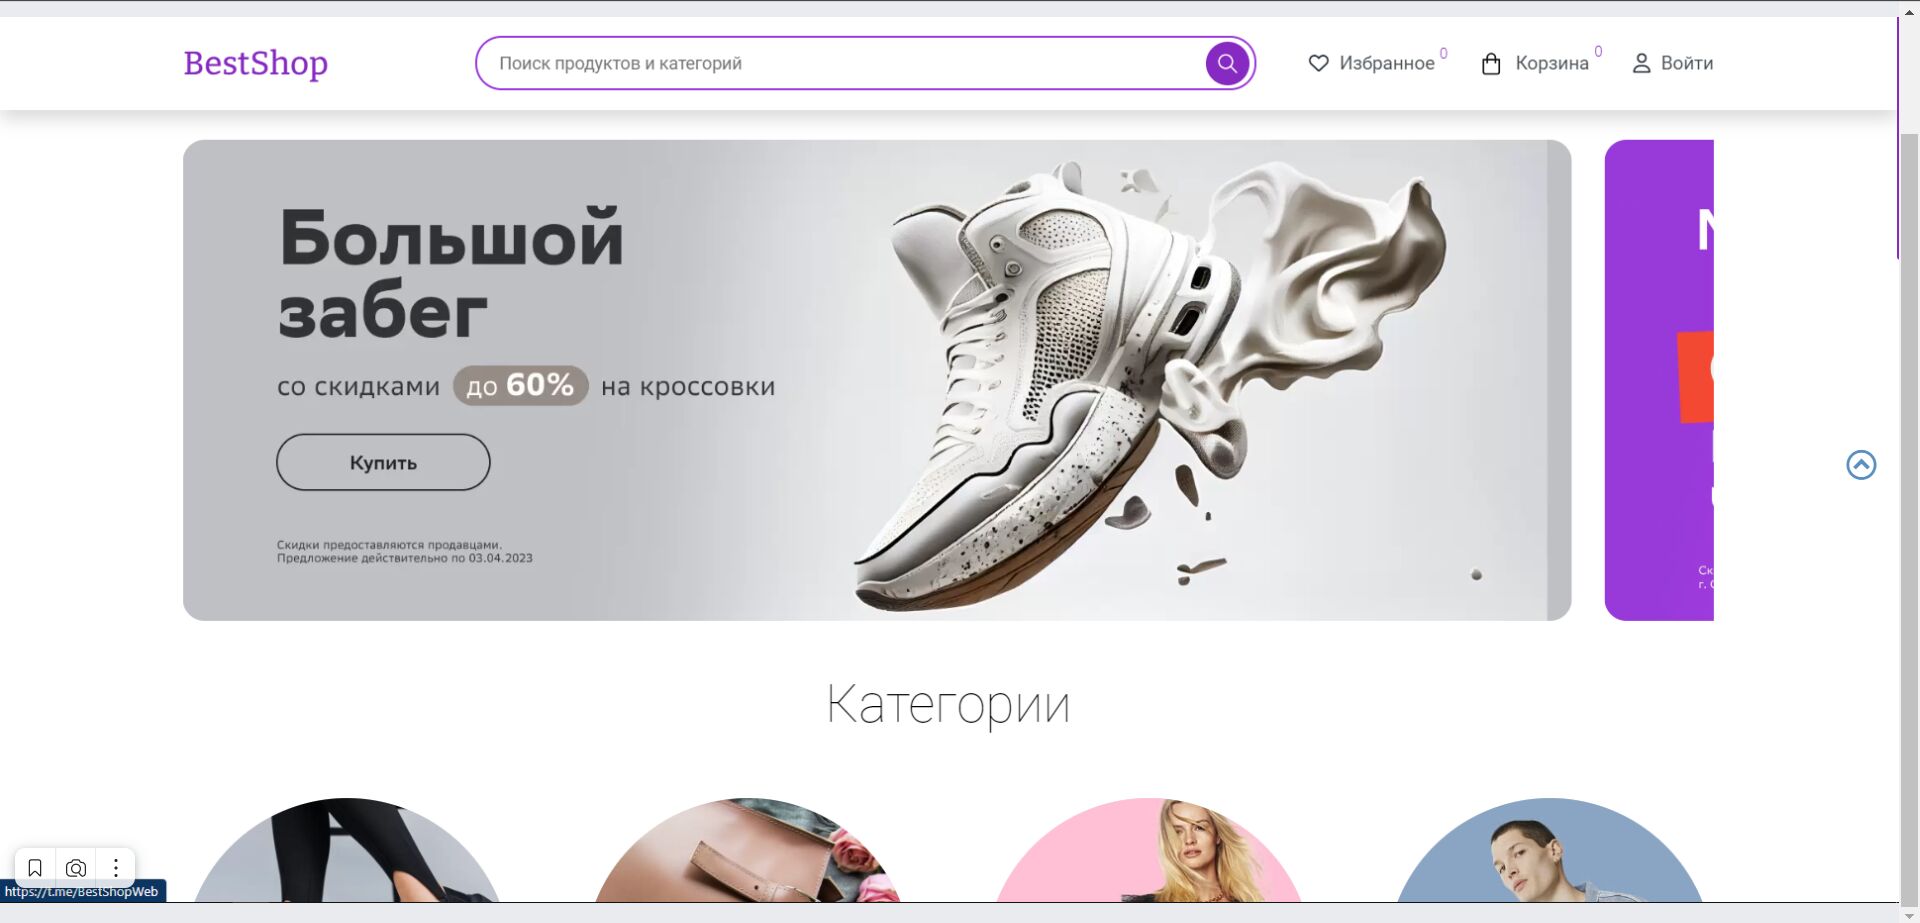 Заявка на участие в проекте  «Для бренда одежды требуется статистика распределения женщин России по росту»